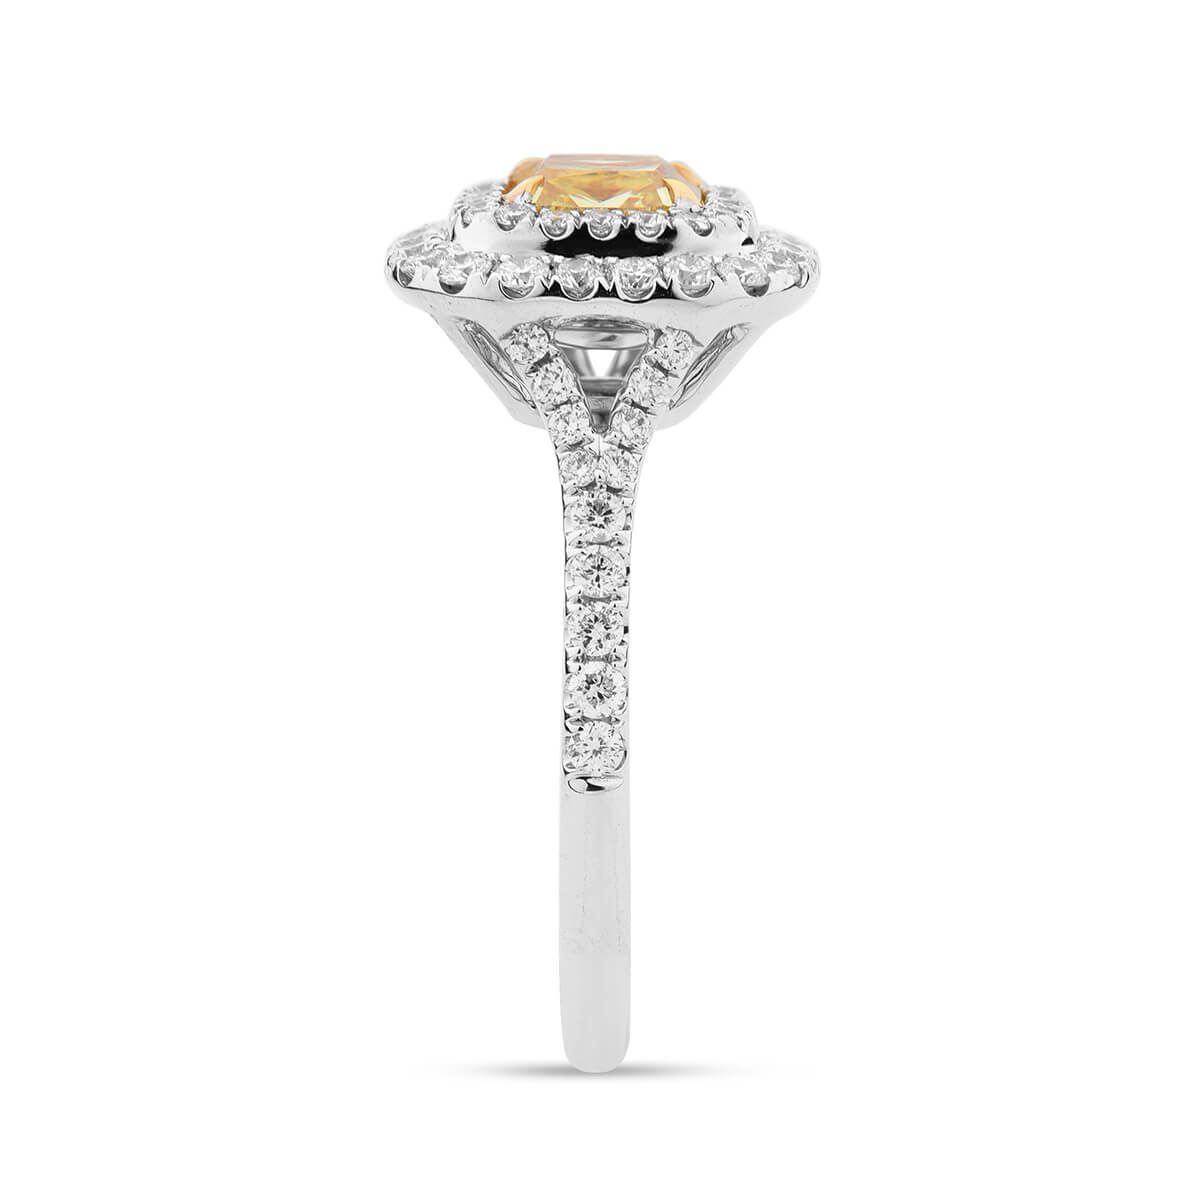 Fancy Intense Yellow Diamond Ring, 1.01 Ct. (1.65 Ct. TW), Cushion shape, GIA Certified, 2237064359